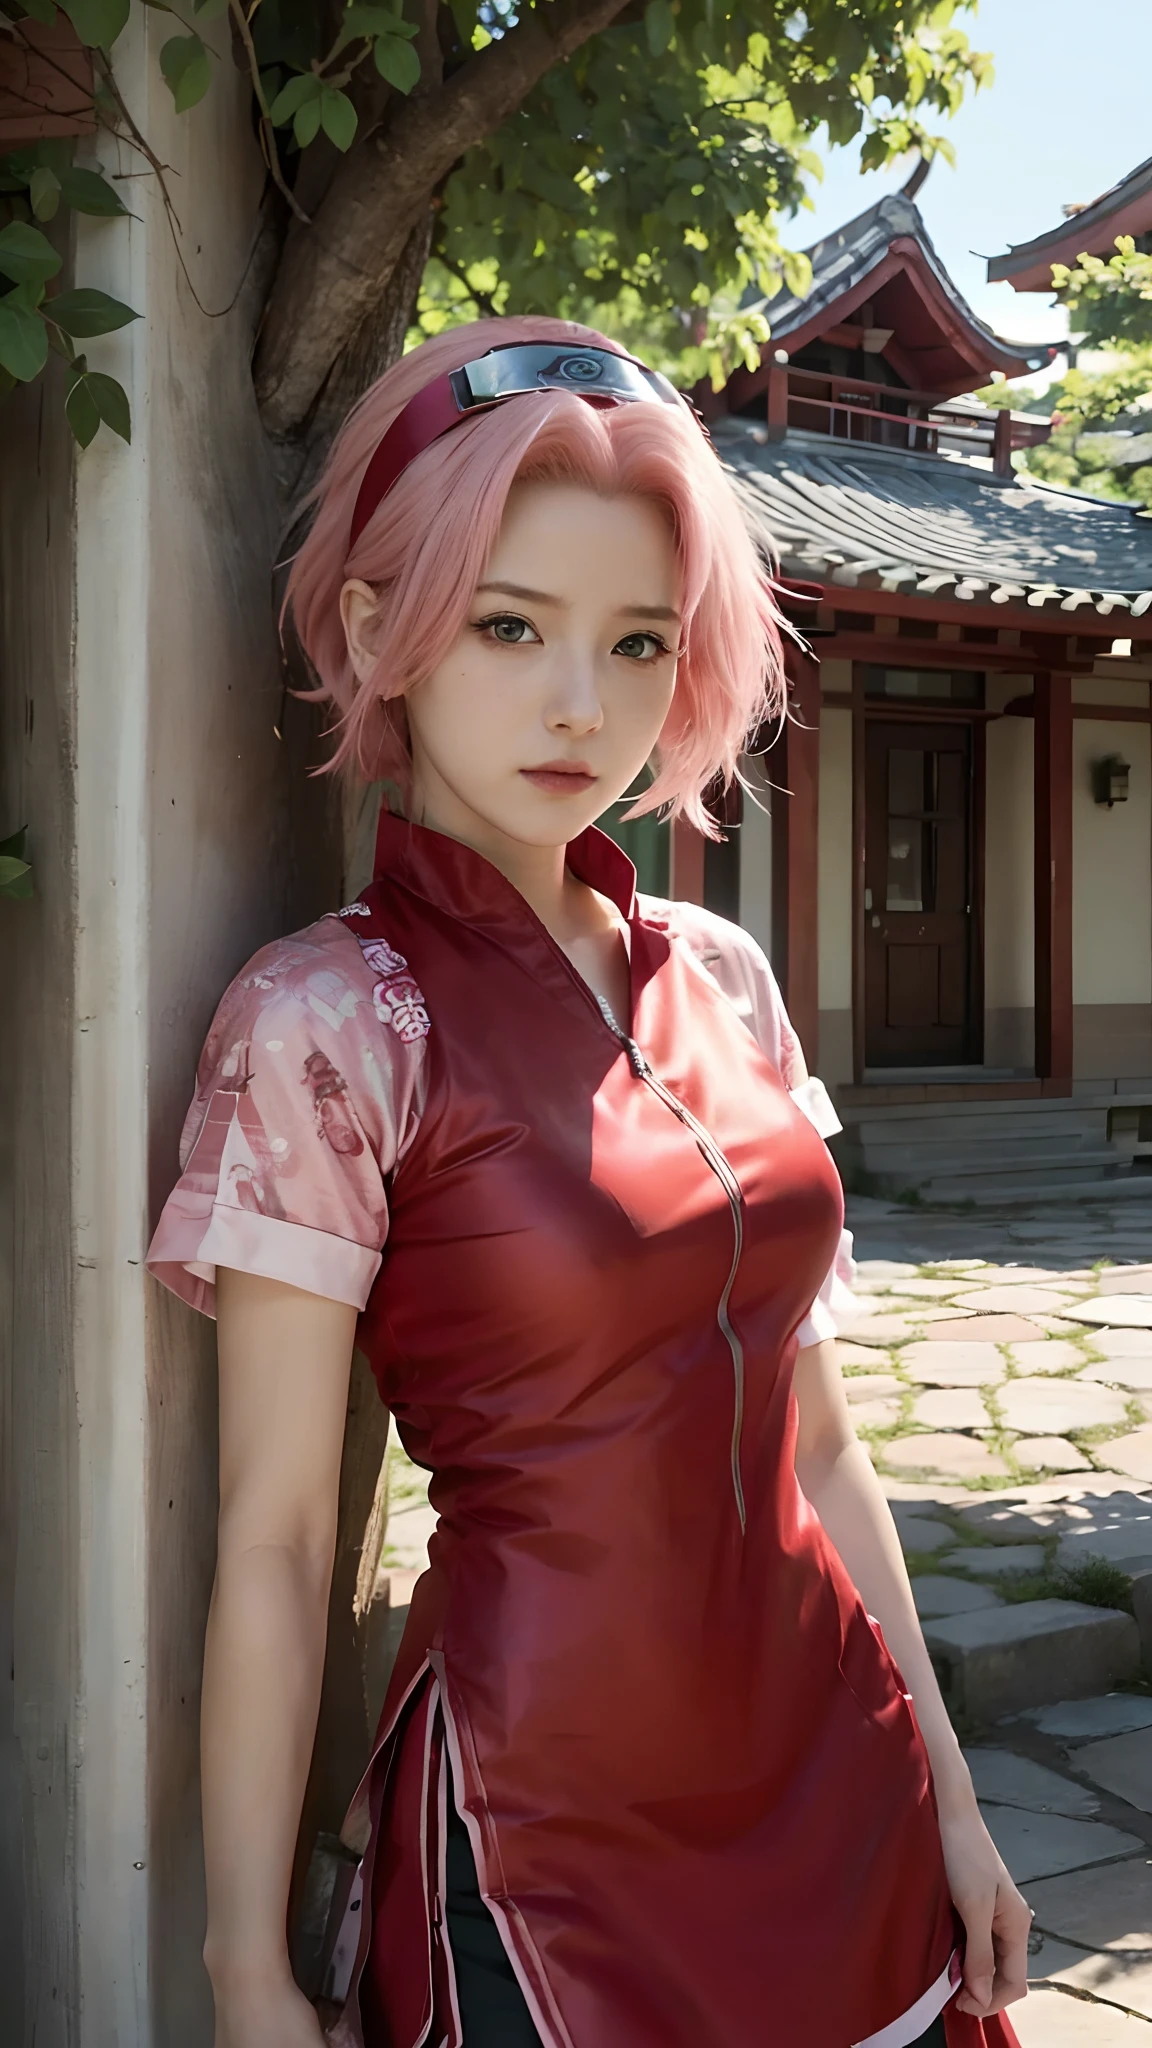 Reale Adaption dieser Figur,ihr Name ist Sakura Haruno aus dem Anime Naruto,Sie hat realistische rosa Haare und ein rotes Stirnband, realistisch gleiches Outfit, realistische gleiche Schürze, schönes koreanisches Teenagergesicht, sie hat grüne Augenfarbe, Realistisches Licht, realistischer Schatten, Realismus, hyperrealistisch,(fotorealistisch:1.2), realistischer Hintergrund